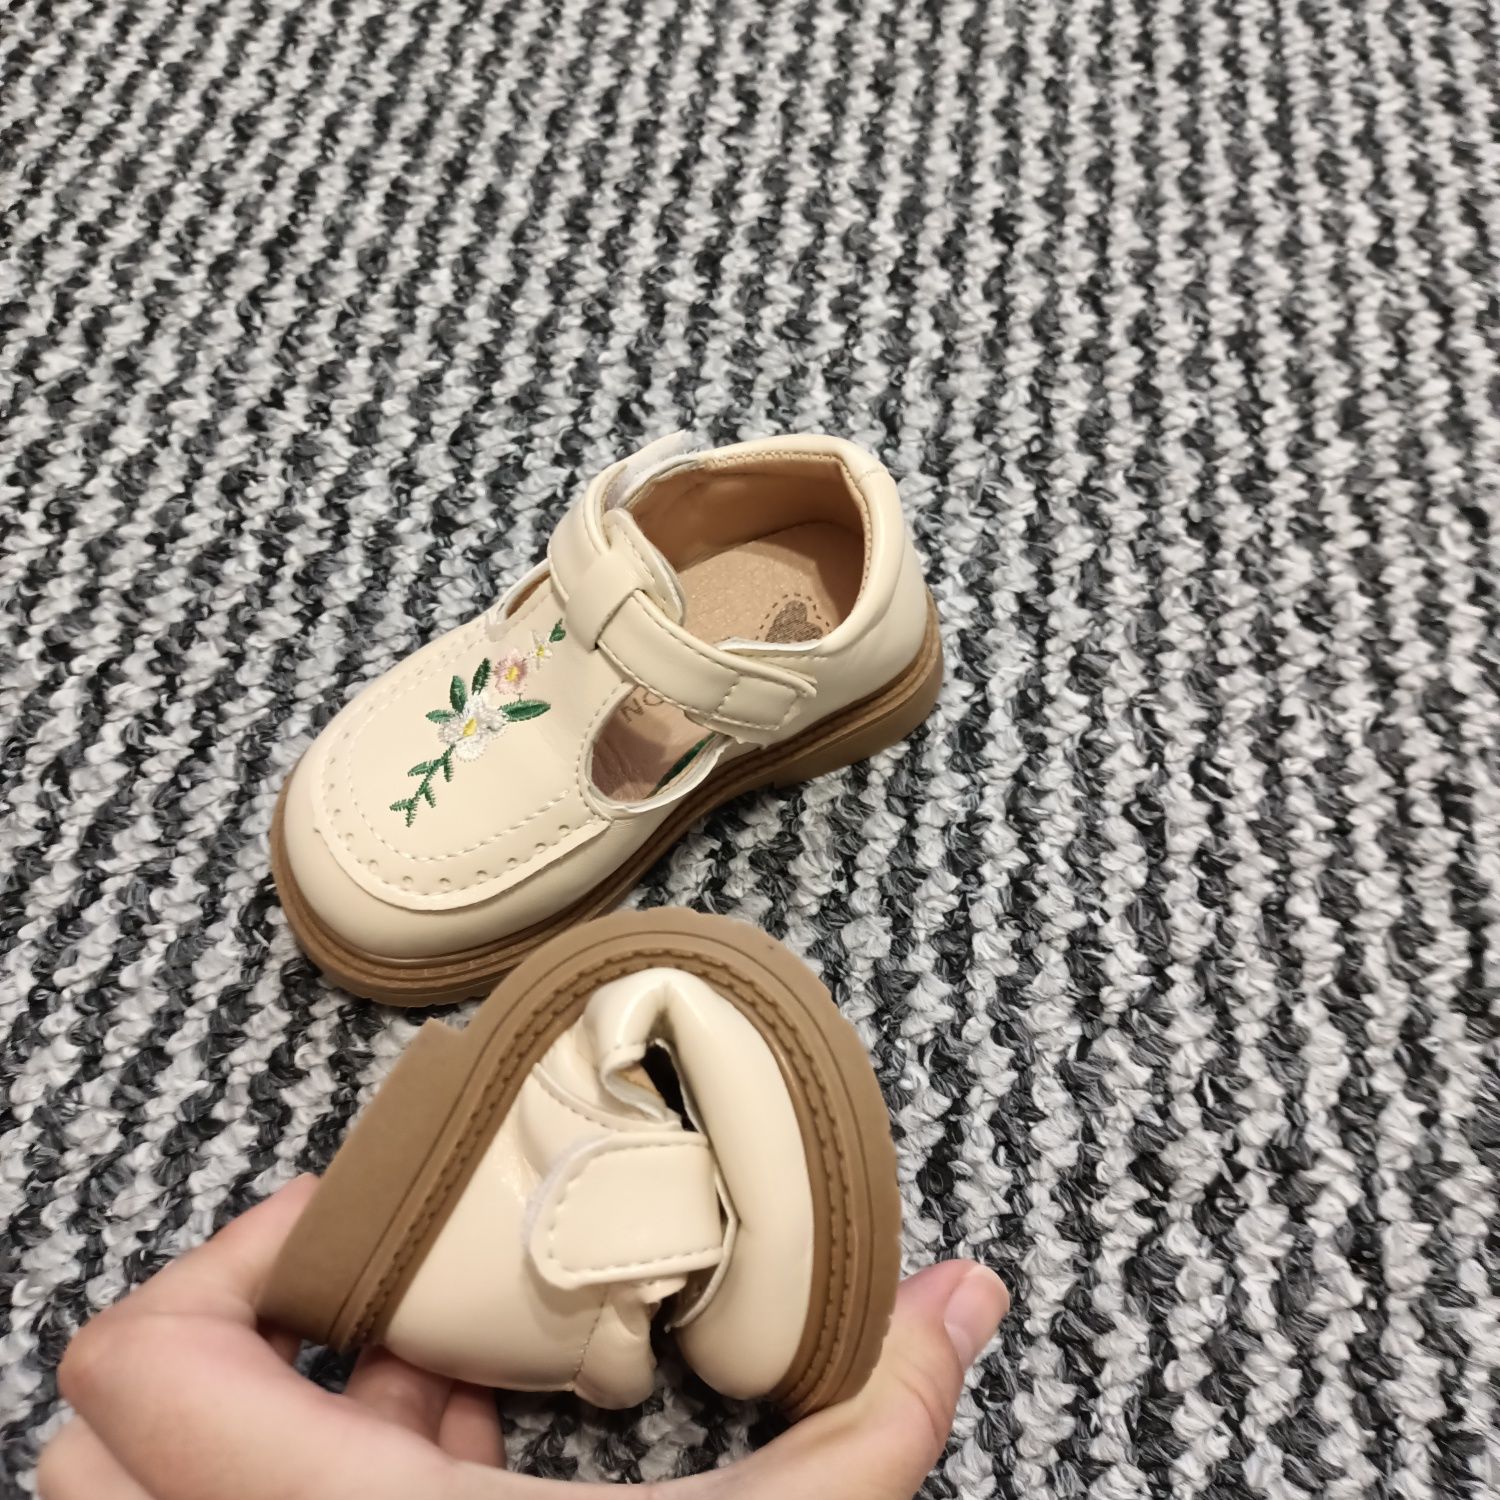 Vând papuci noi copii mărimea 21